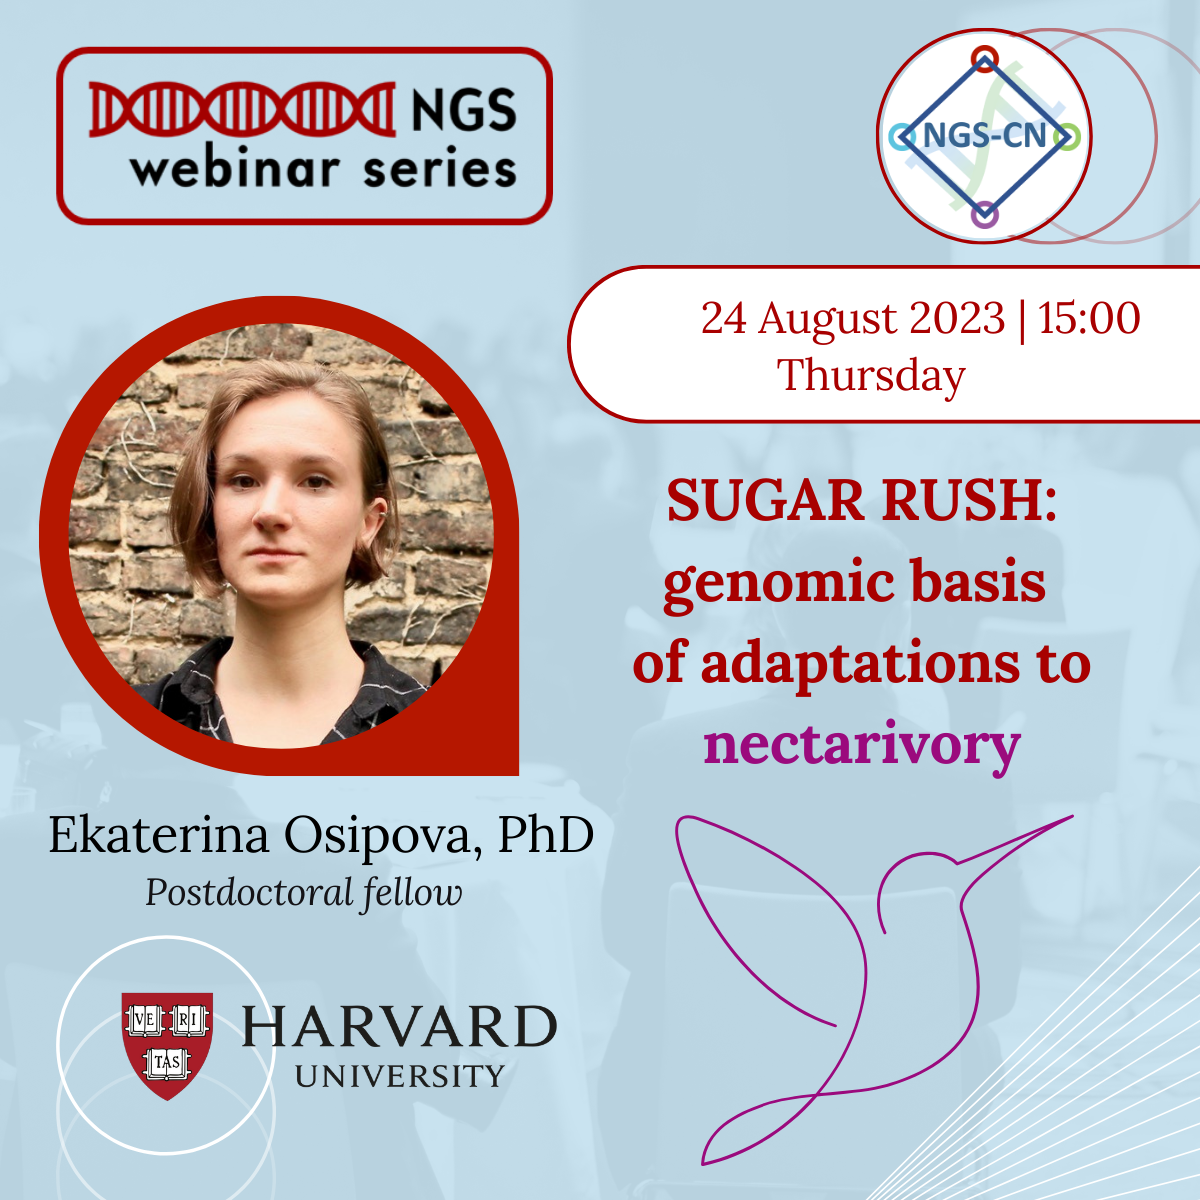 NGS-CN Webinars: SUGAR RUSH – genomic basis of adaptations to nectarivory